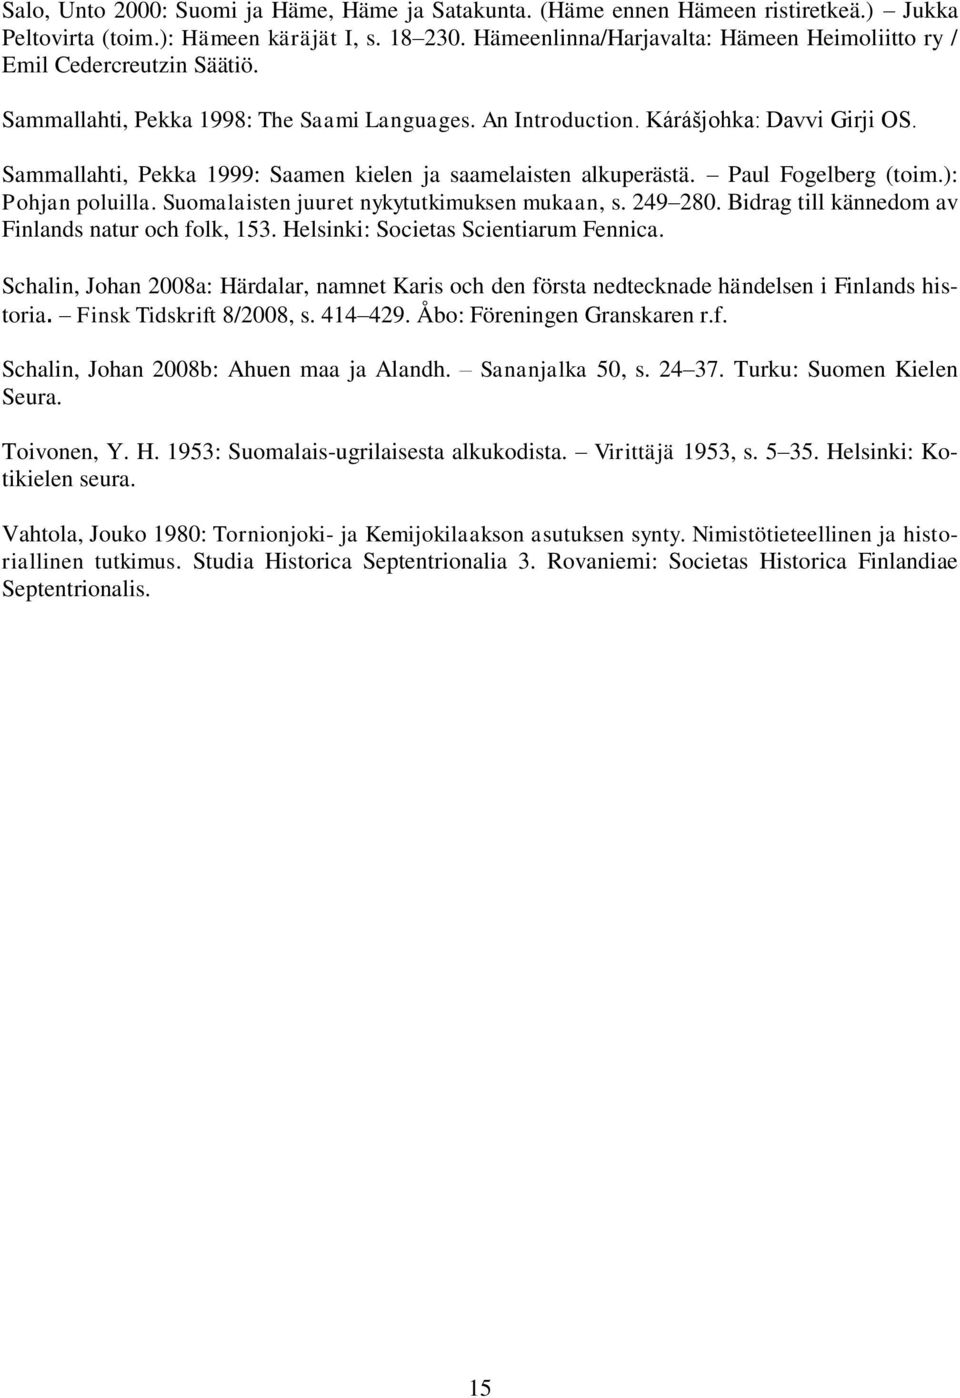 Sammallahti, Pekka 1999: Saamen kielen ja saamelaisten alkuperästä. Paul Fogelberg (toim.): Pohjan poluilla. Suomalaisten juuret nykytutkimuksen mukaan, s. 249 280.